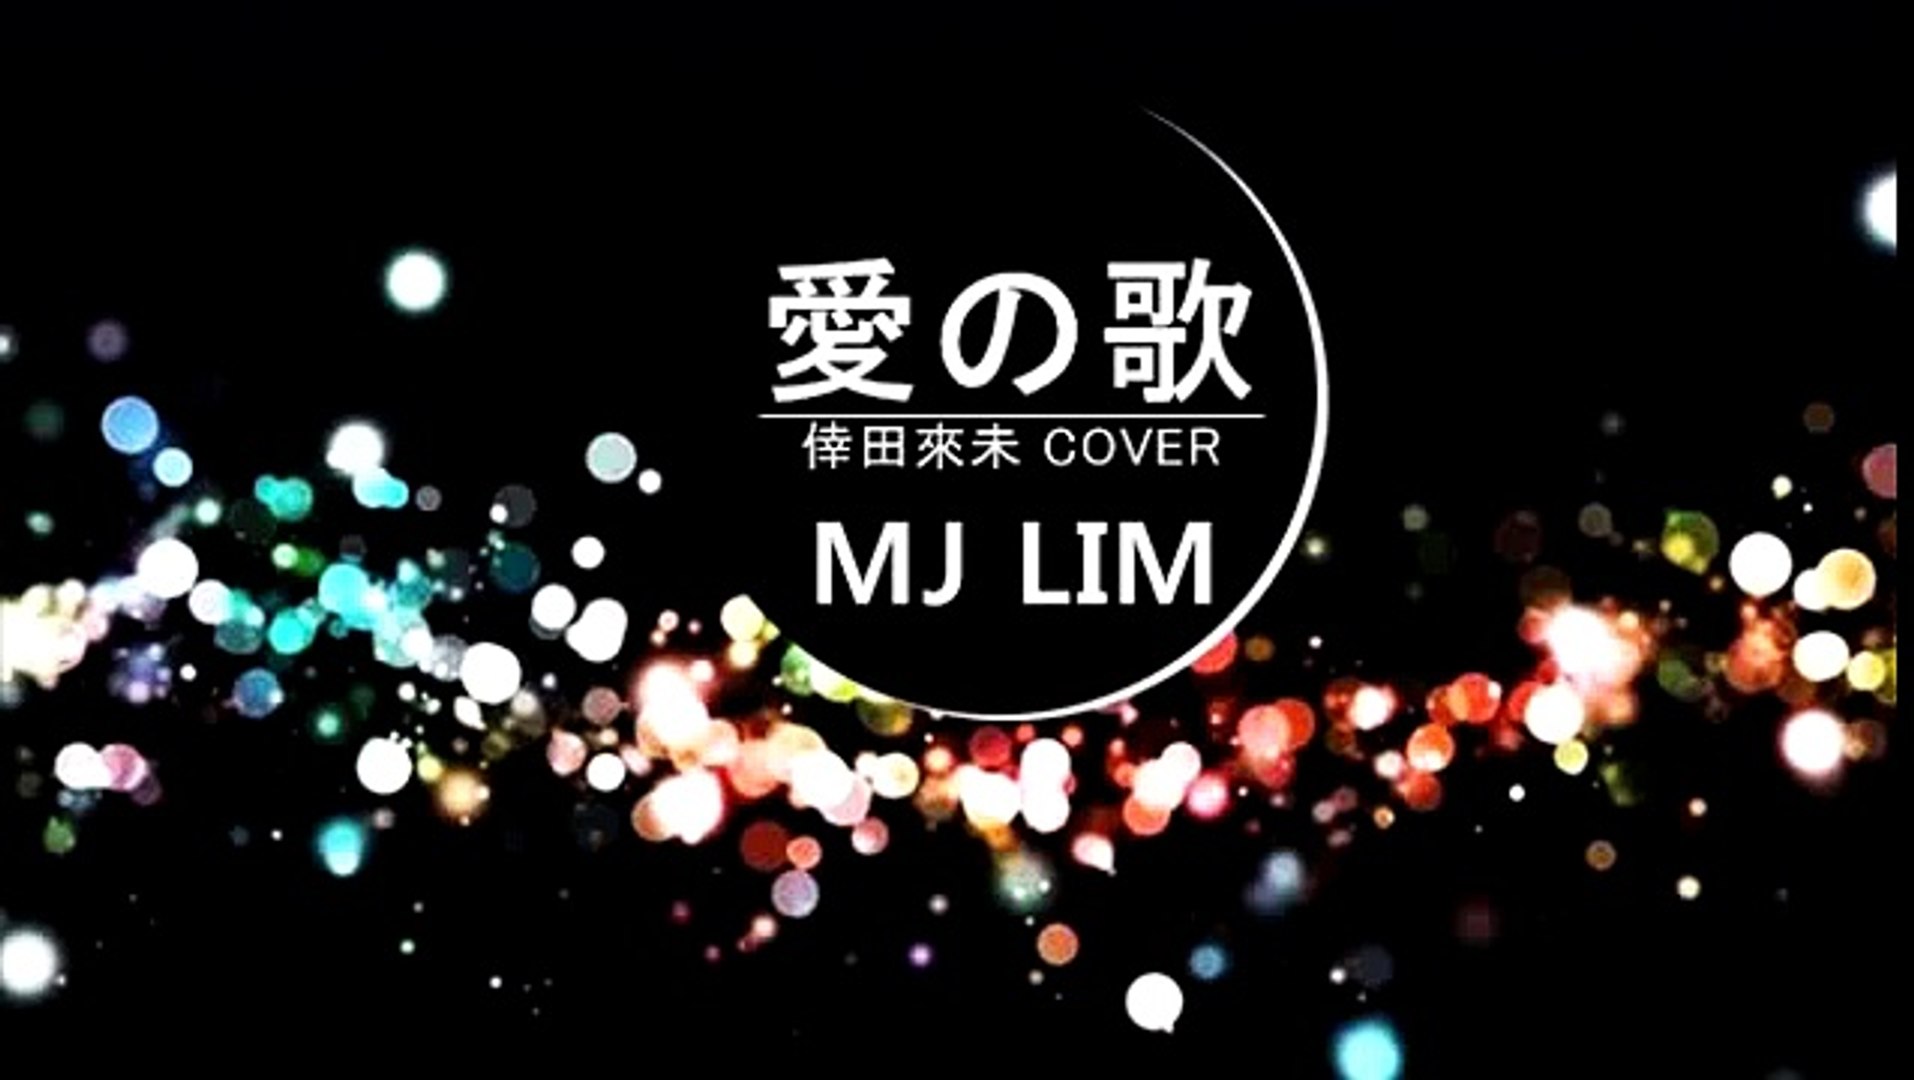 愛の歌 Ai No Uta Mj Lim Cover 倖田來未 Koda Kumi Mic Rec W O Video Video Dailymotion